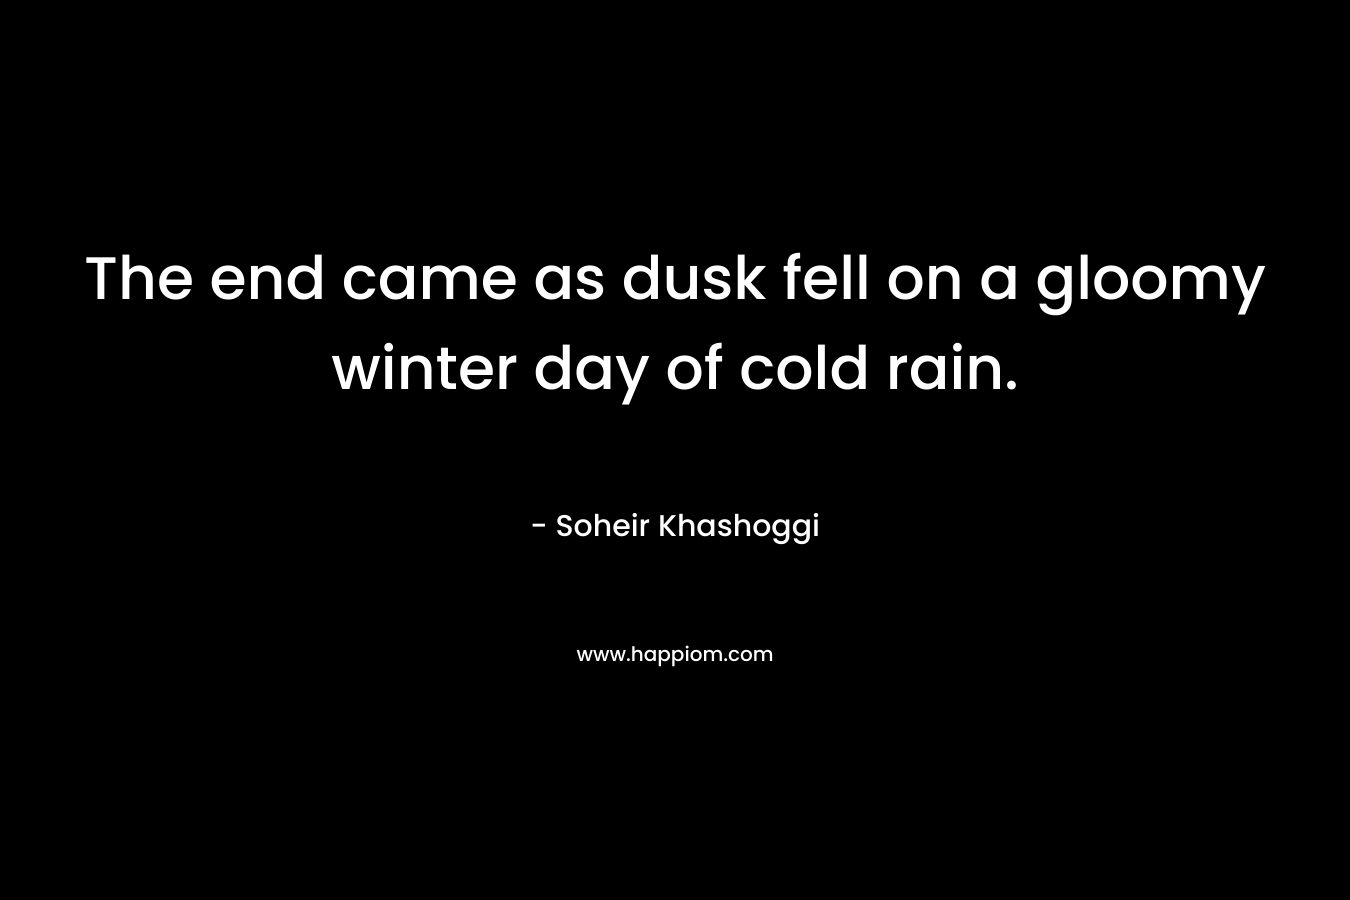 The end came as dusk fell on a gloomy winter day of cold rain. – Soheir Khashoggi